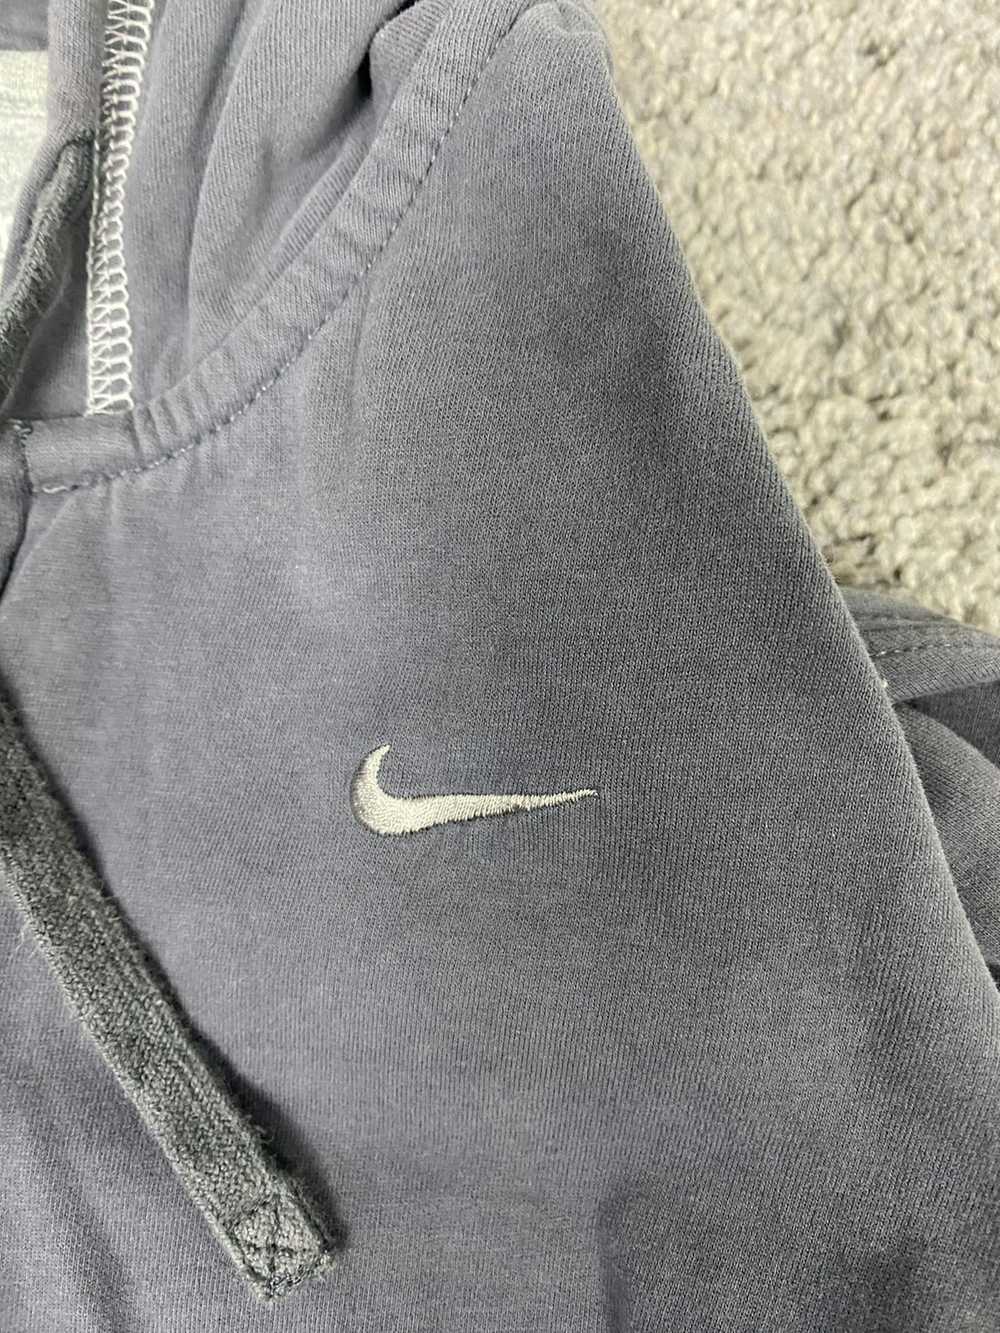 Nike × Streetwear × Vintage Y2k gray nike zip up - image 6